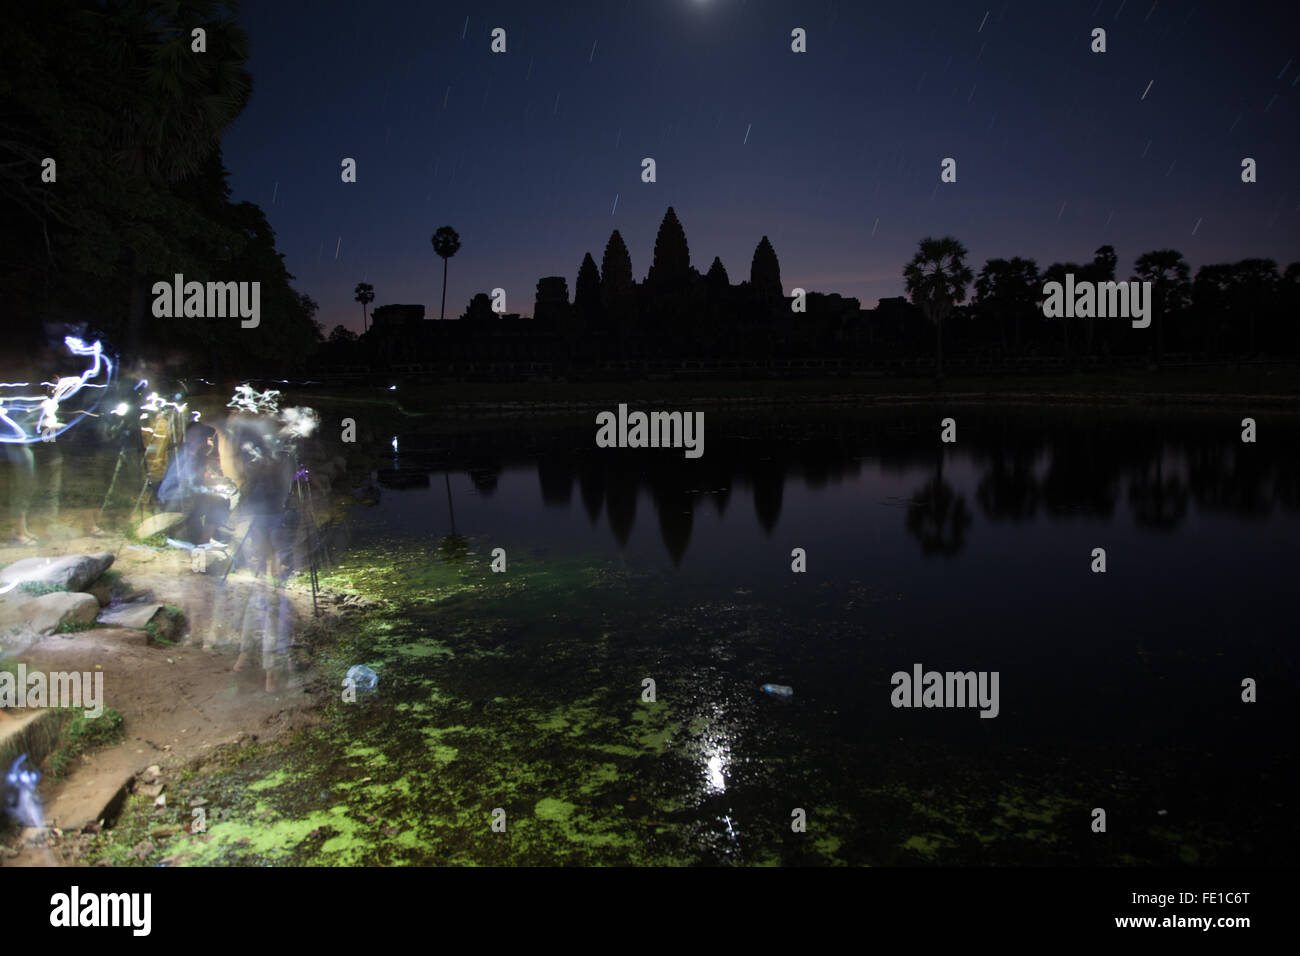 Los turistas observan el amanecer sobre Angkor Wat en Camboya, Siem Reap, destino turístico de Asia Foto de stock